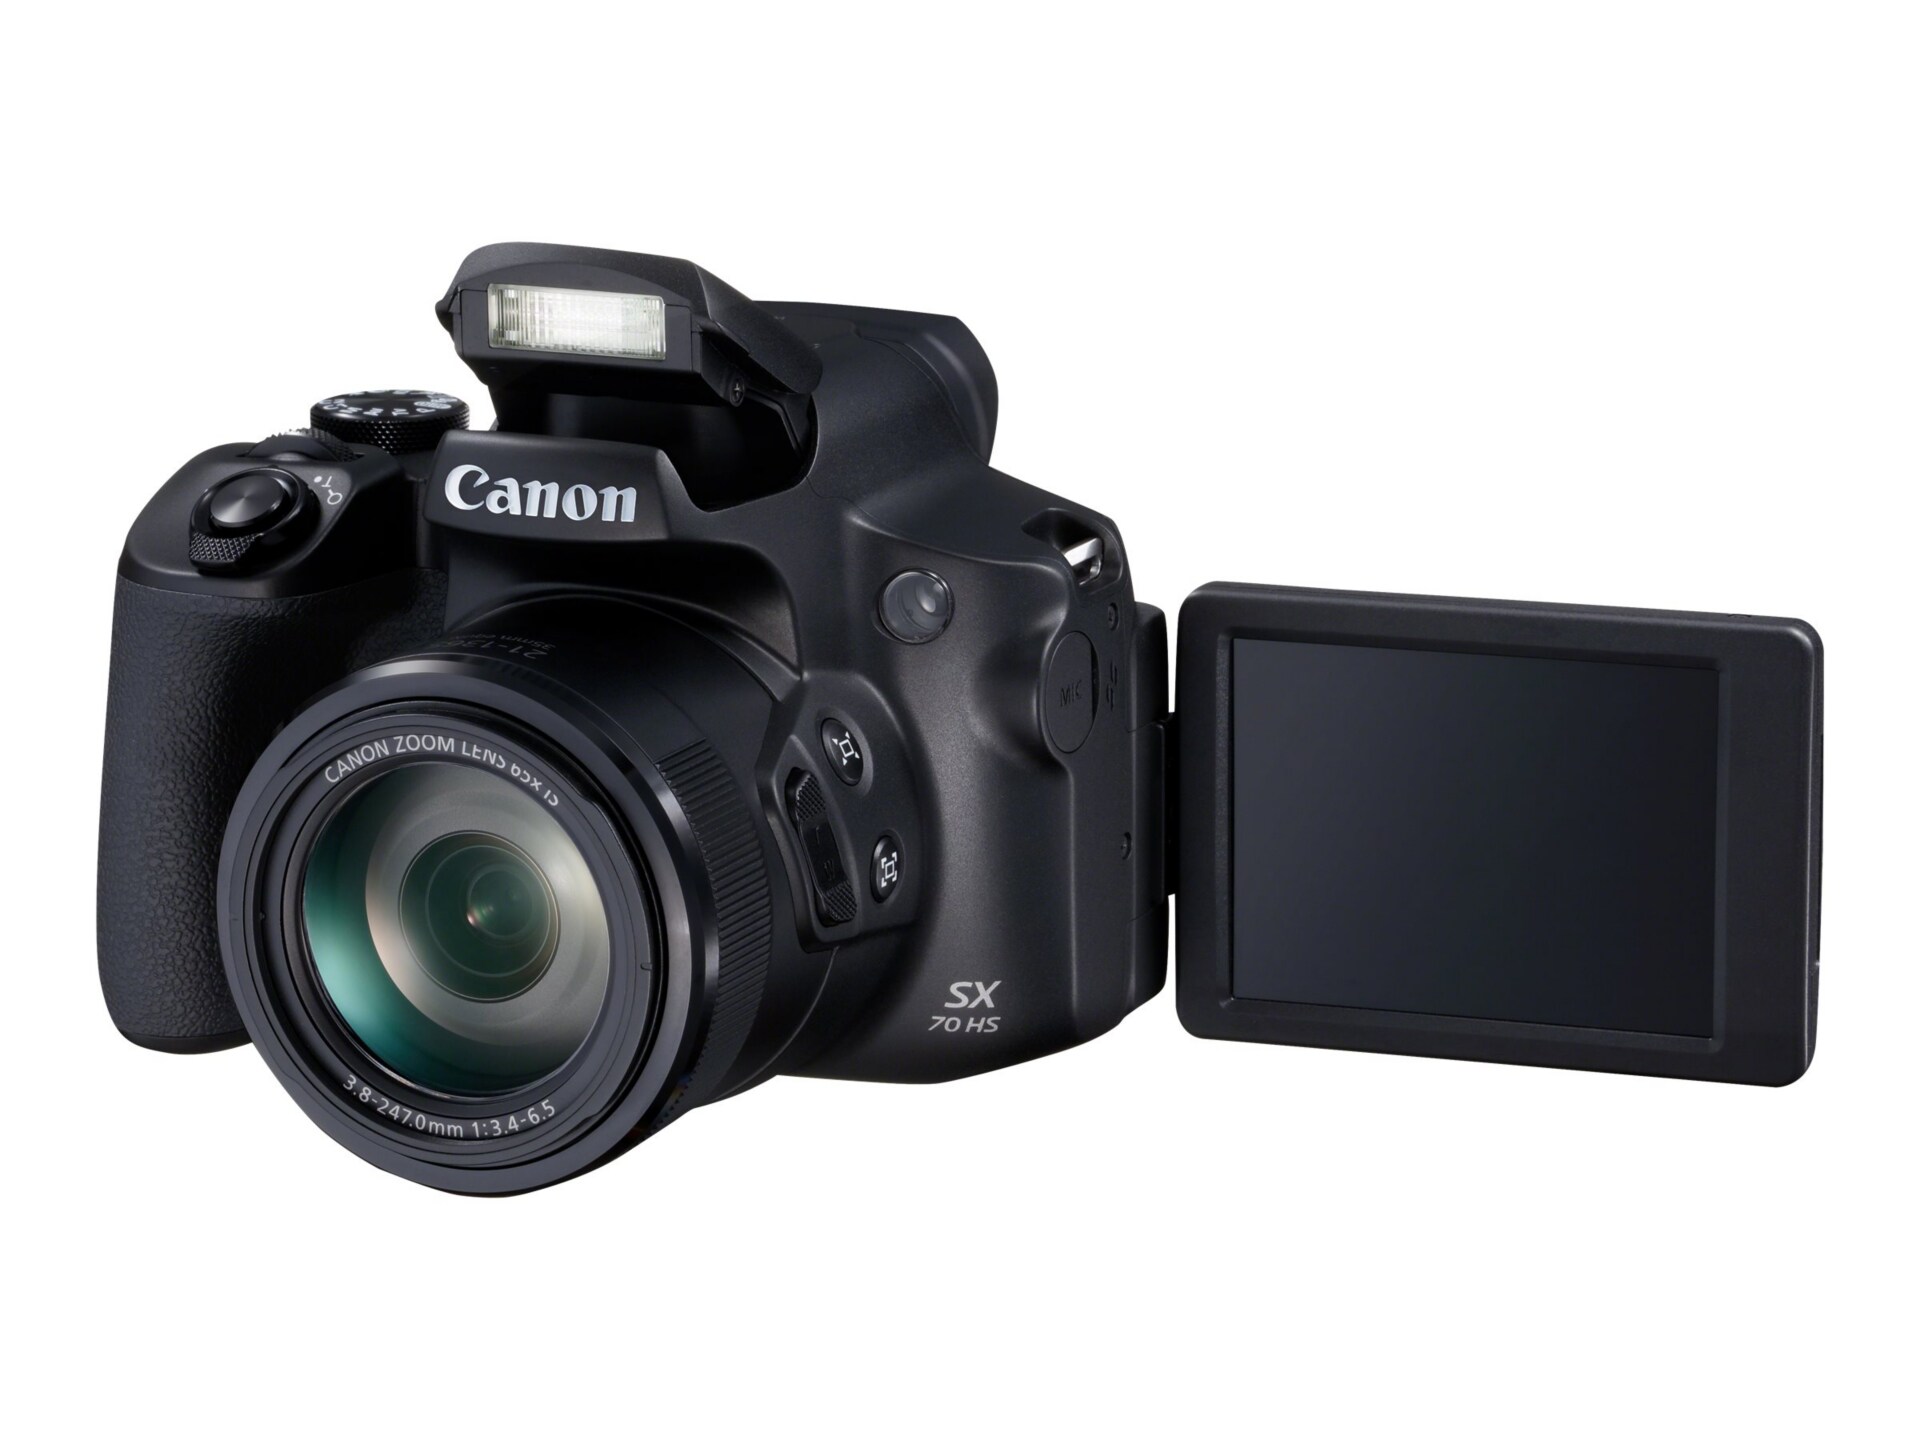 Canon SX70 HS - digital camera - 3071C001 - Cameras - CDW.com